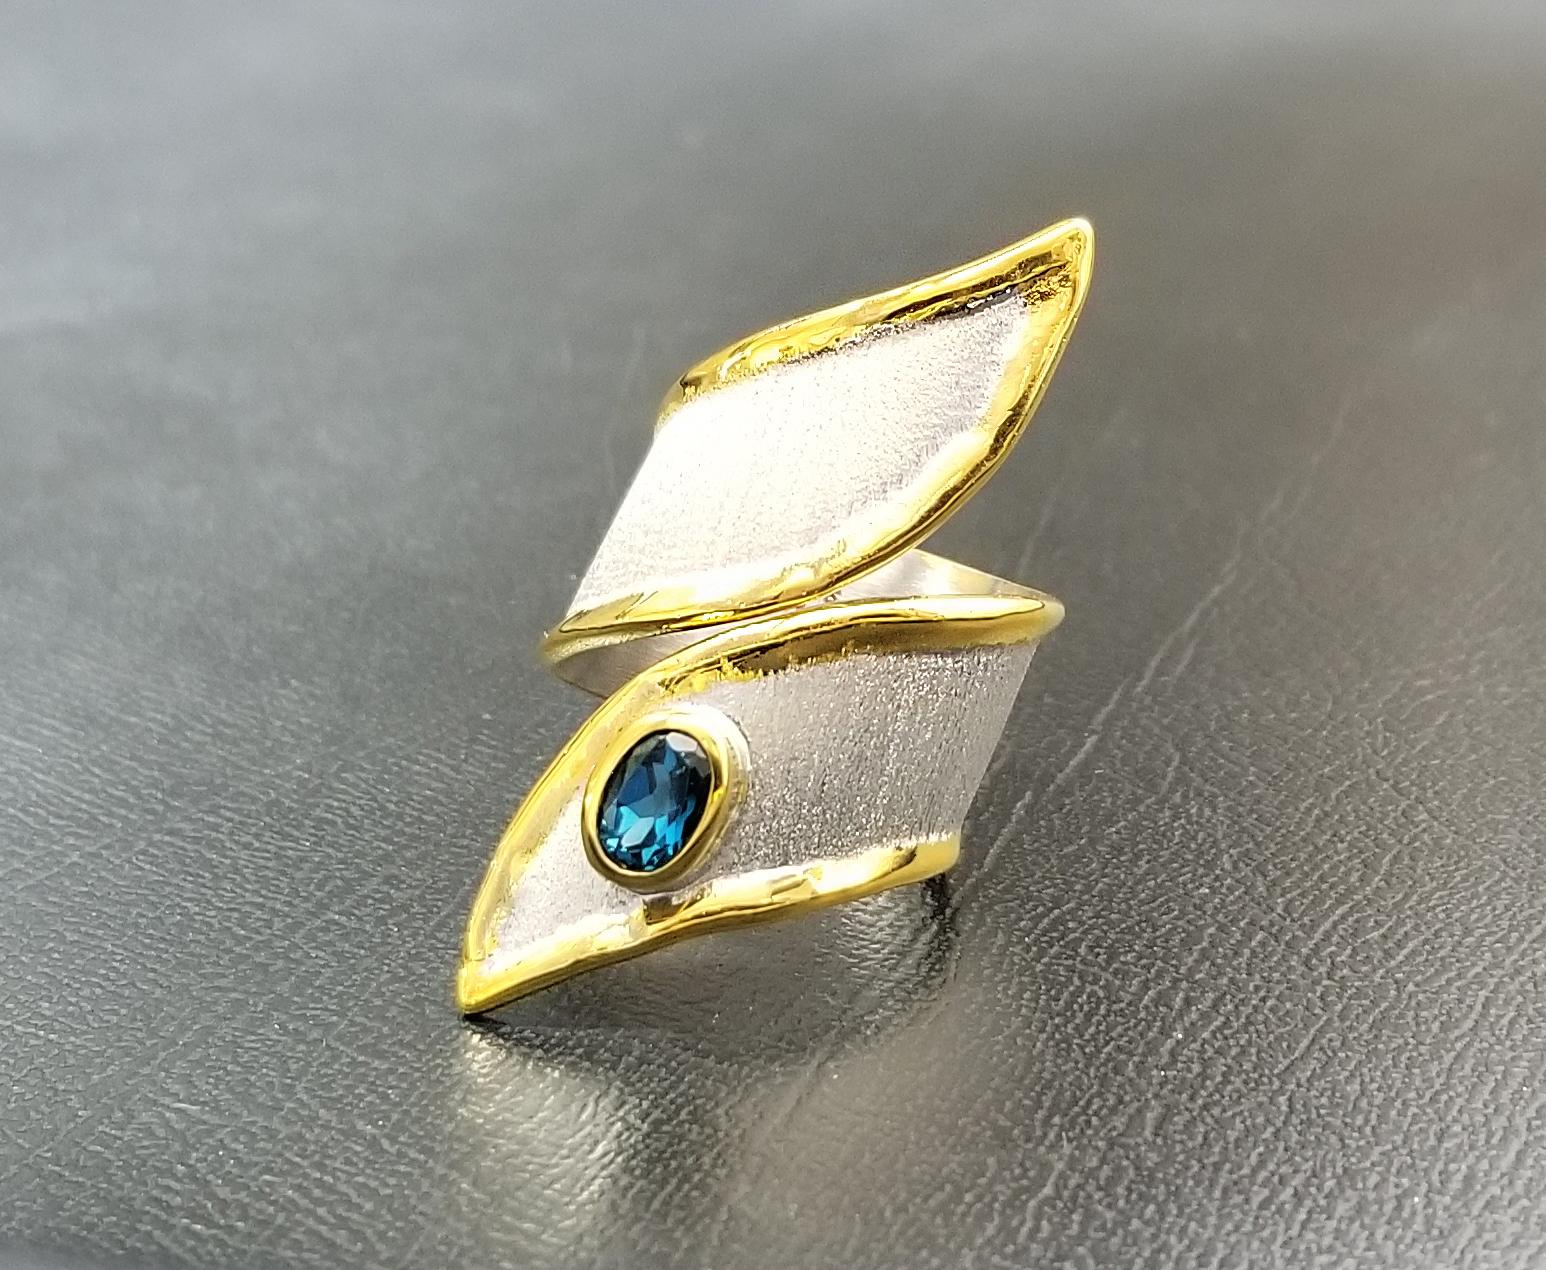 Der breite handgefertigte Ring von Yianni Creations aus der Midas Collection ist aus feinem 950er Silber gefertigt und mit Palladium beschichtet, um den Elementen zu widerstehen. Die Flüssigkeitsränder sind mit einer dicken Schicht aus 24 Karat